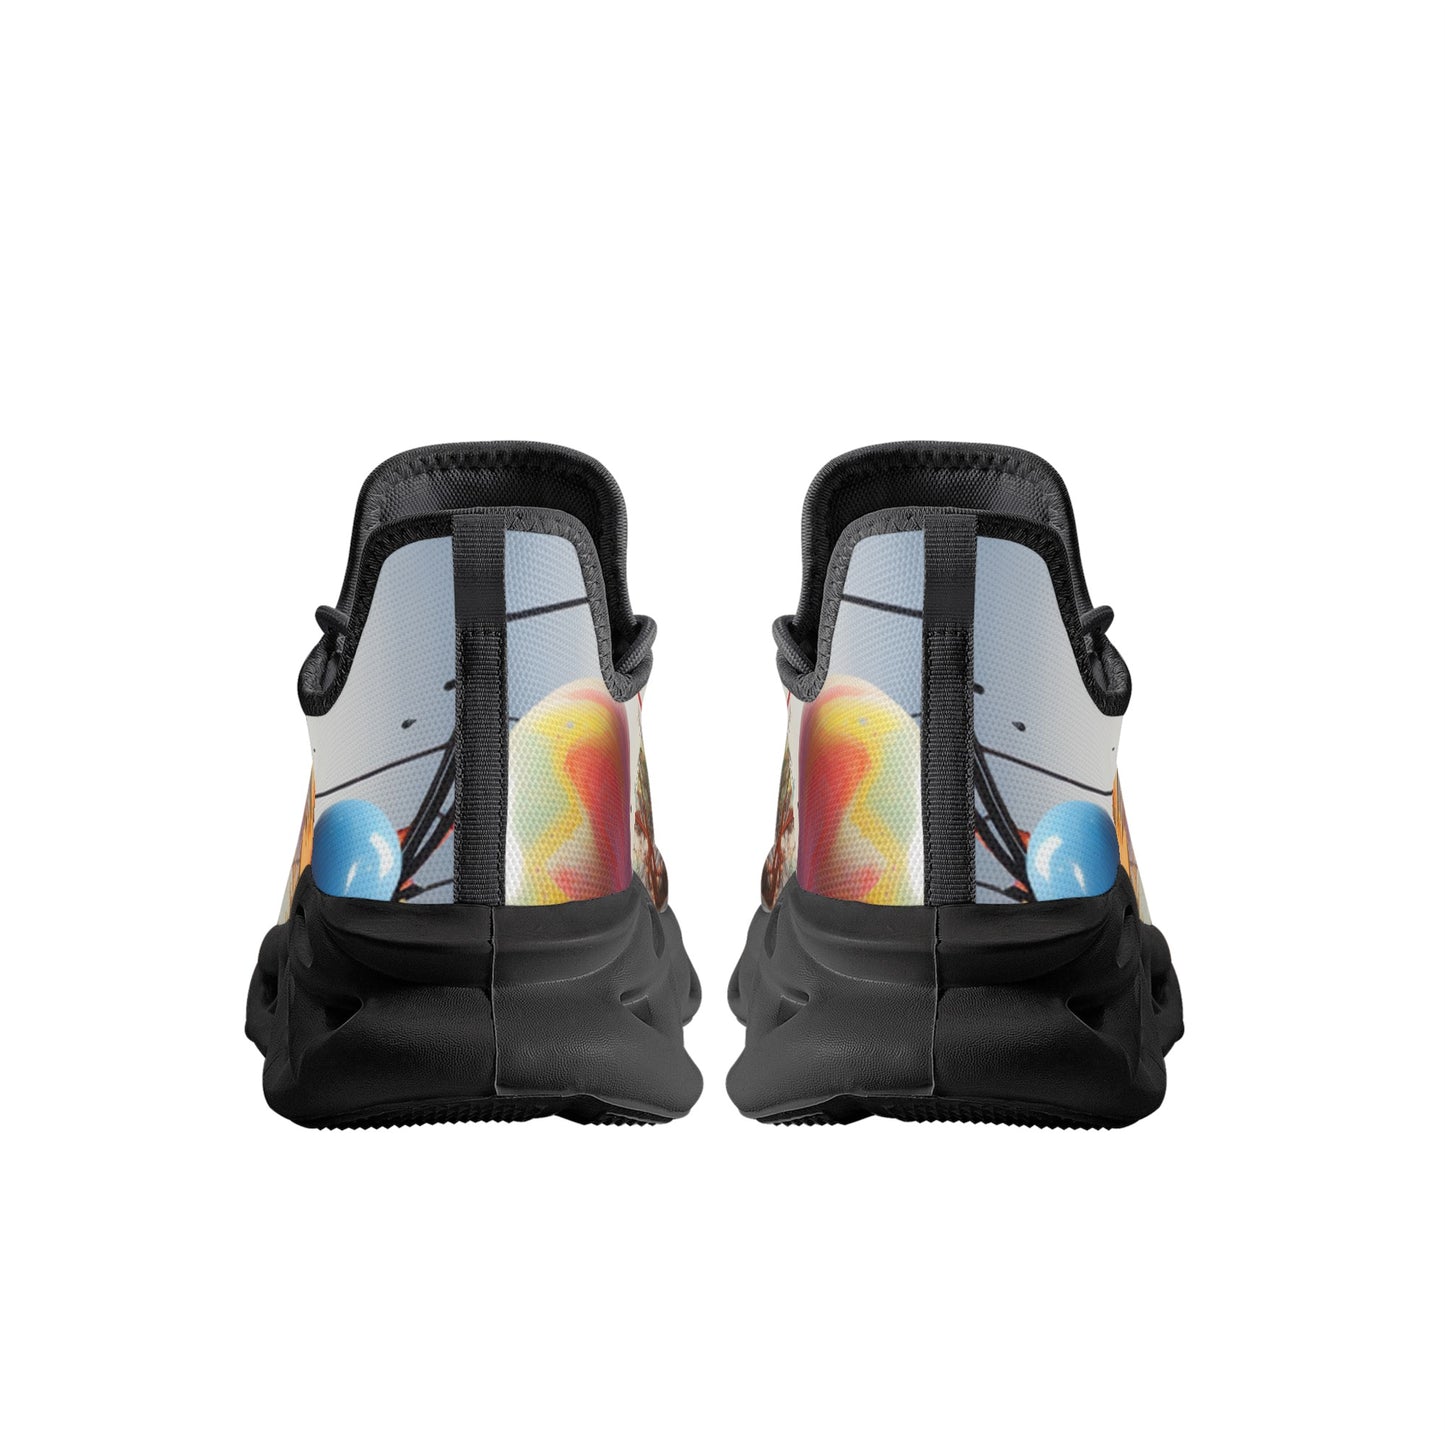 Abstract Expression Sneakers | Neduz Flex Comfort | Men’s Artistic Splash Footwear